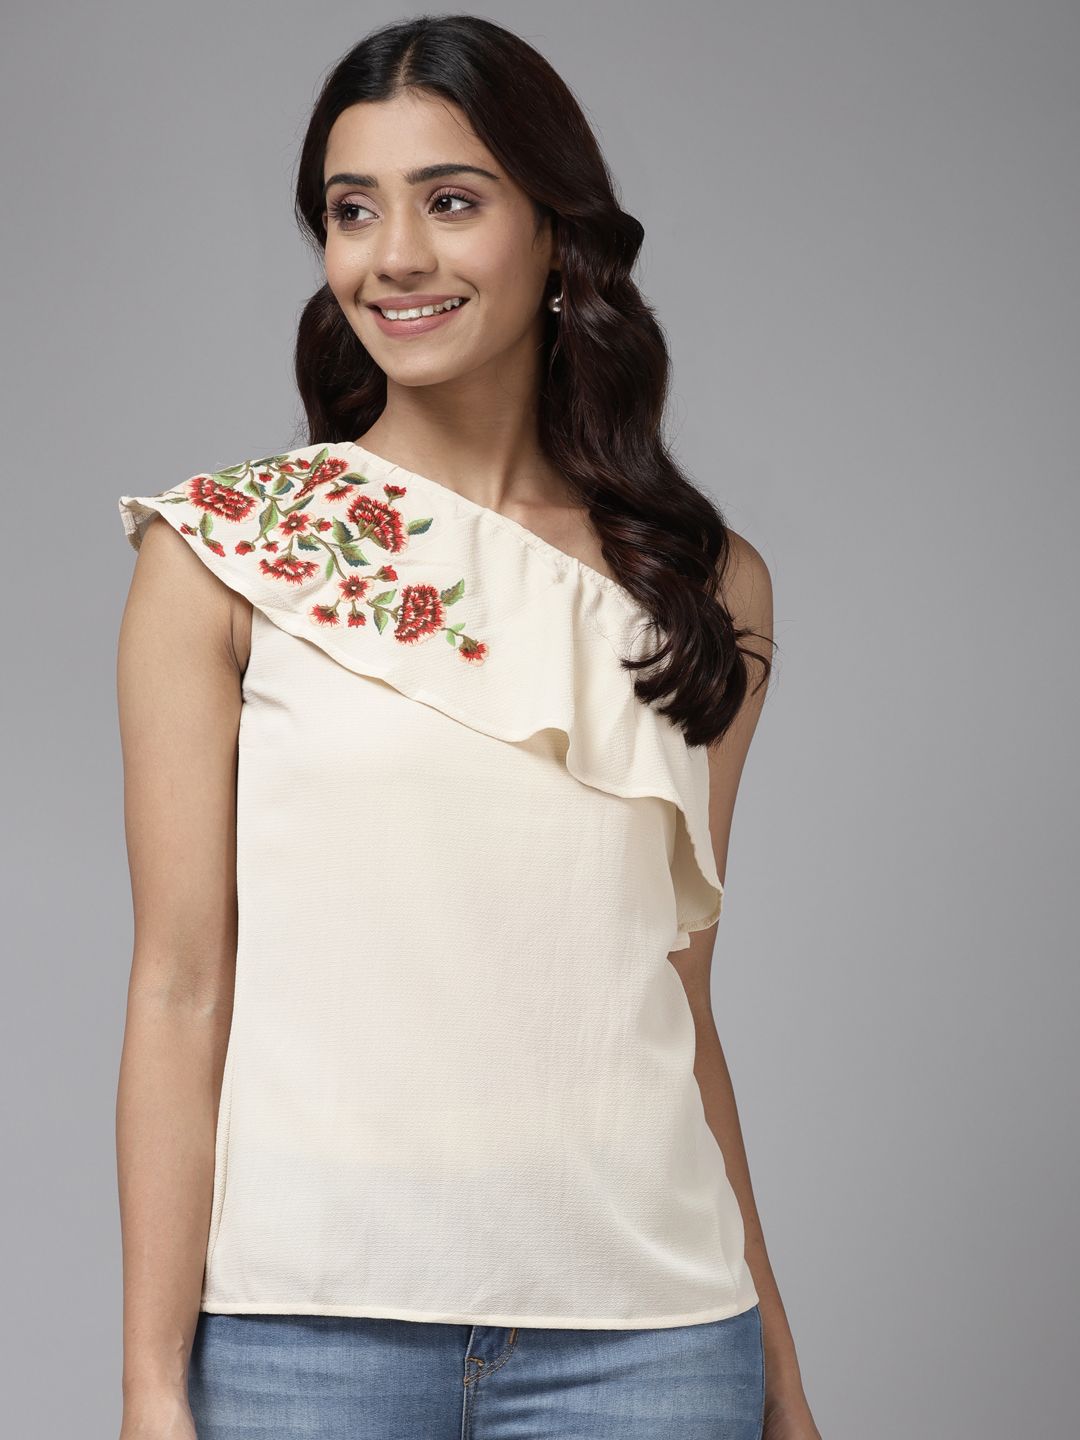 Aarika Beige Floral Print One Shoulder Ruffles Georgette Top Price in India